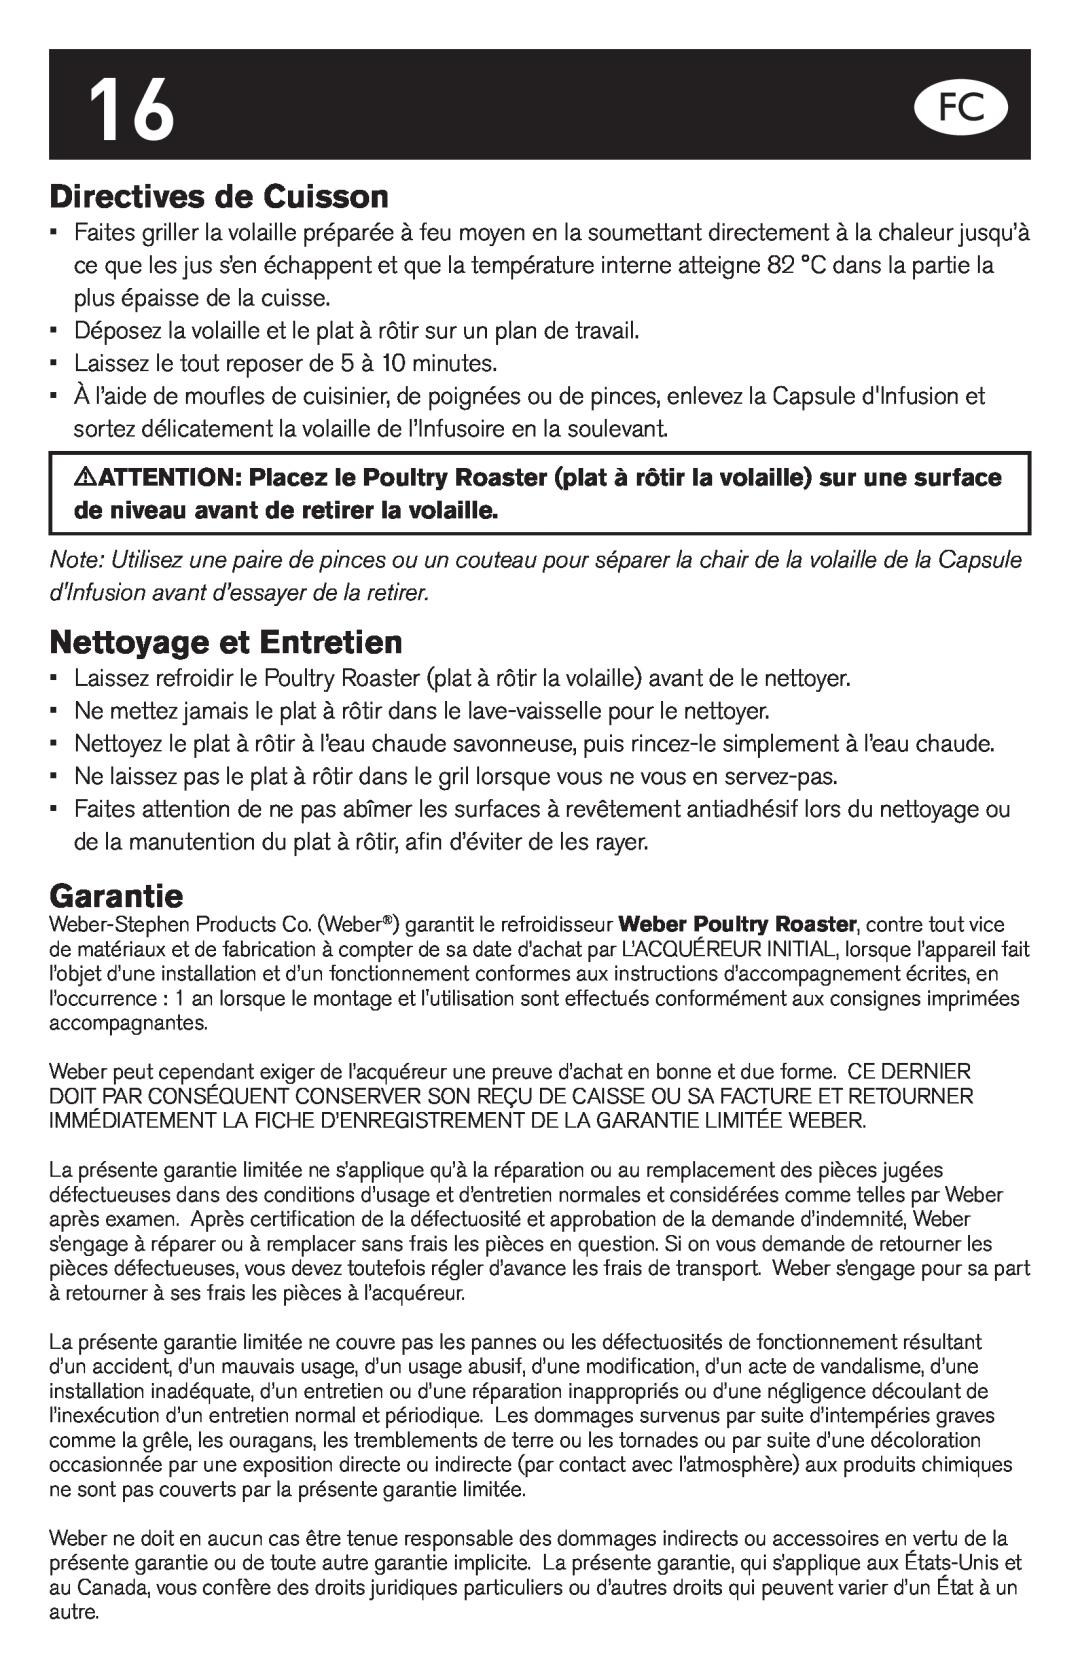 Weber Oven manual Directives de Cuisson, Nettoyage et Entretien, Garantie 